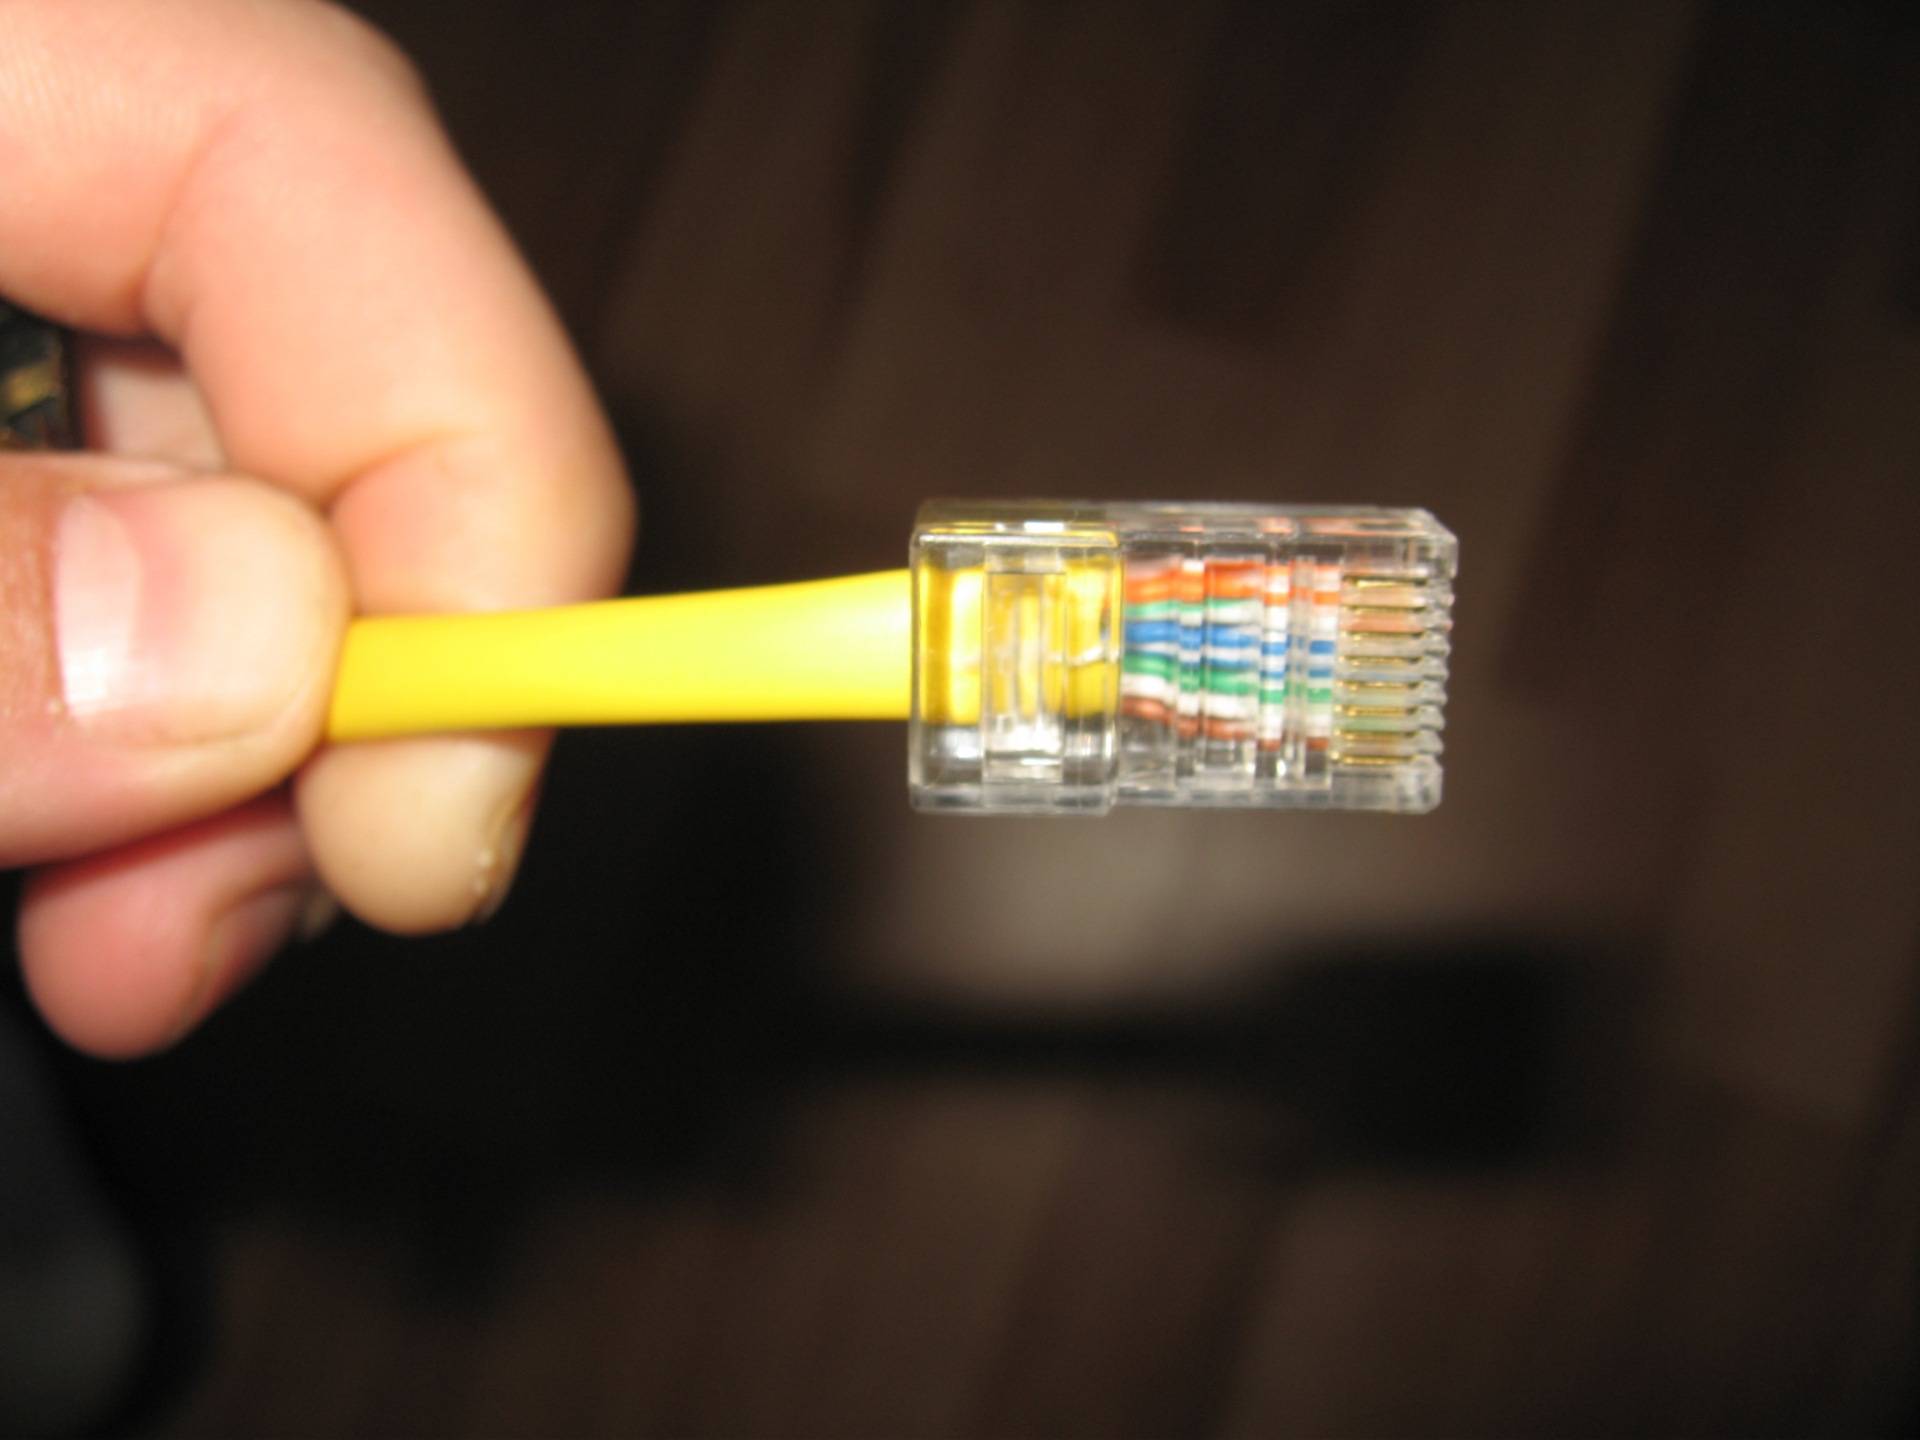 Как обжать сетевой кабель самому в домашних условиях